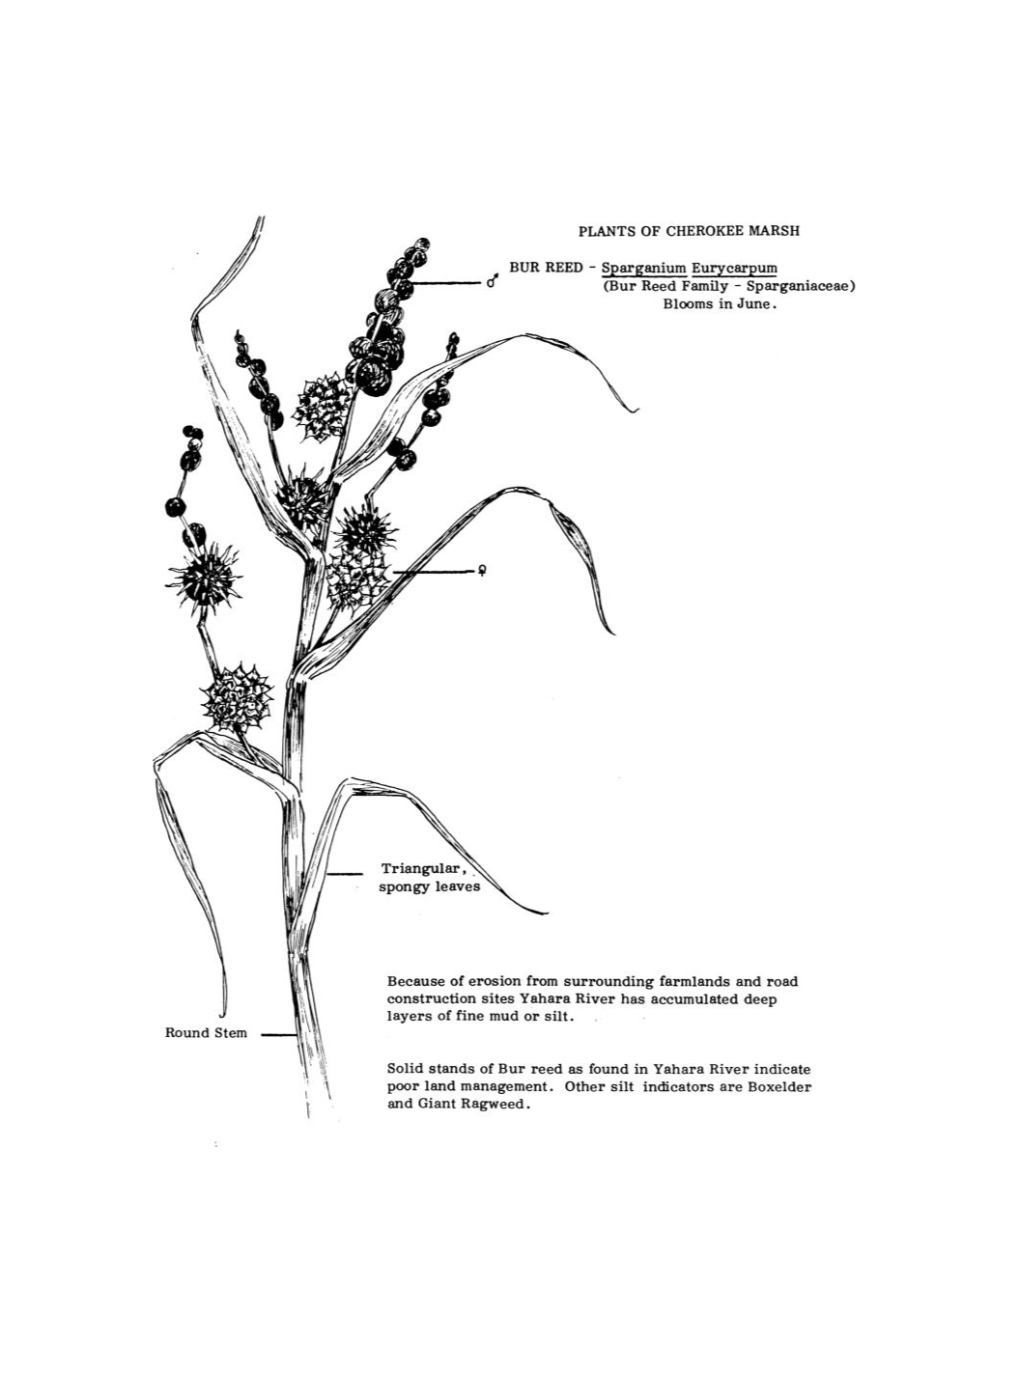 BUR REED - Spargaiiium Eurycarpum D (Bur Reed Family - Sparganiaceae) Blooms in June